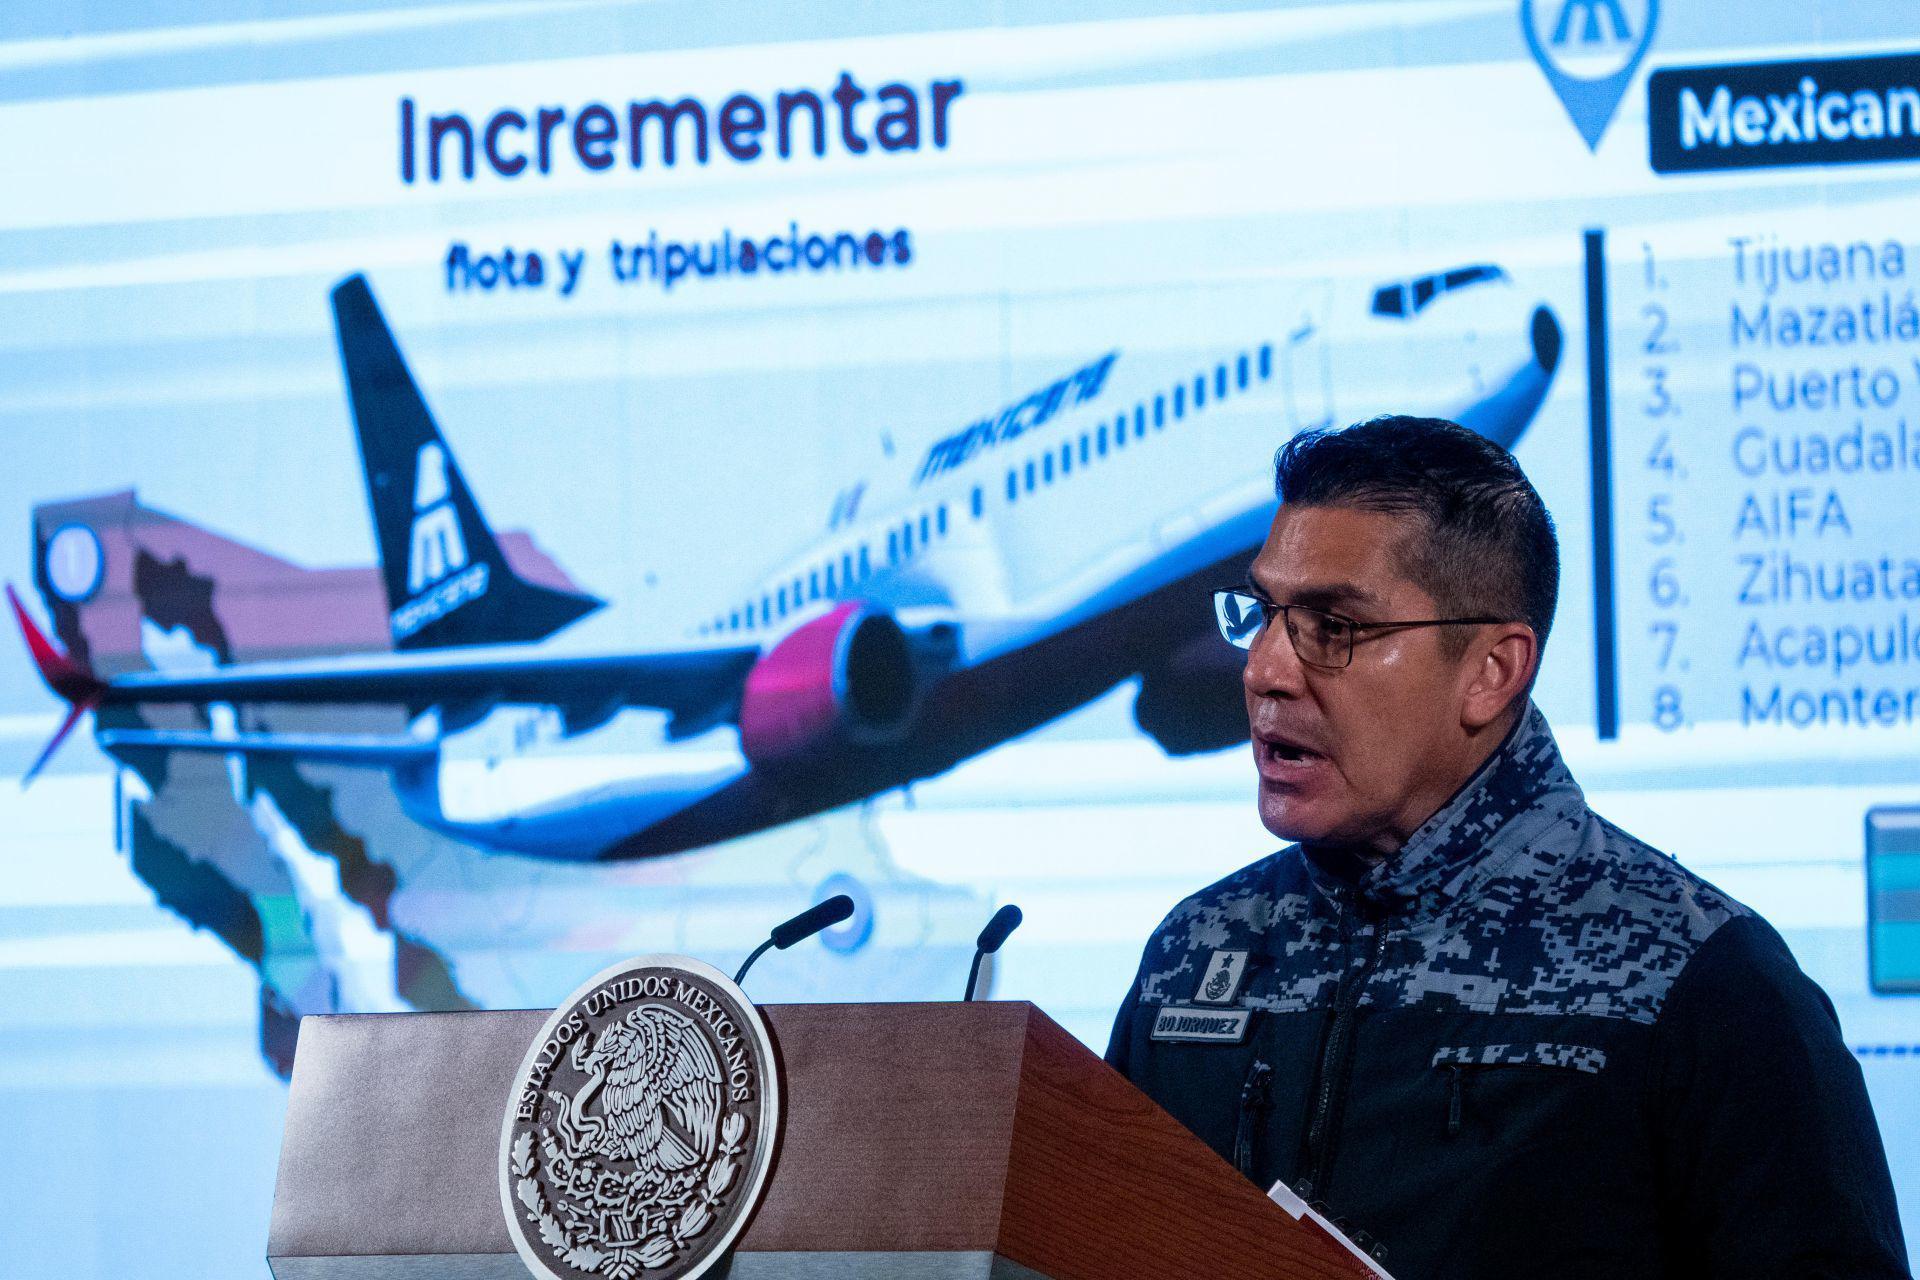 Sigue extendiendo sus alas: Mexicana volará a 4 nuevos destinos en México. Noticias en tiempo real